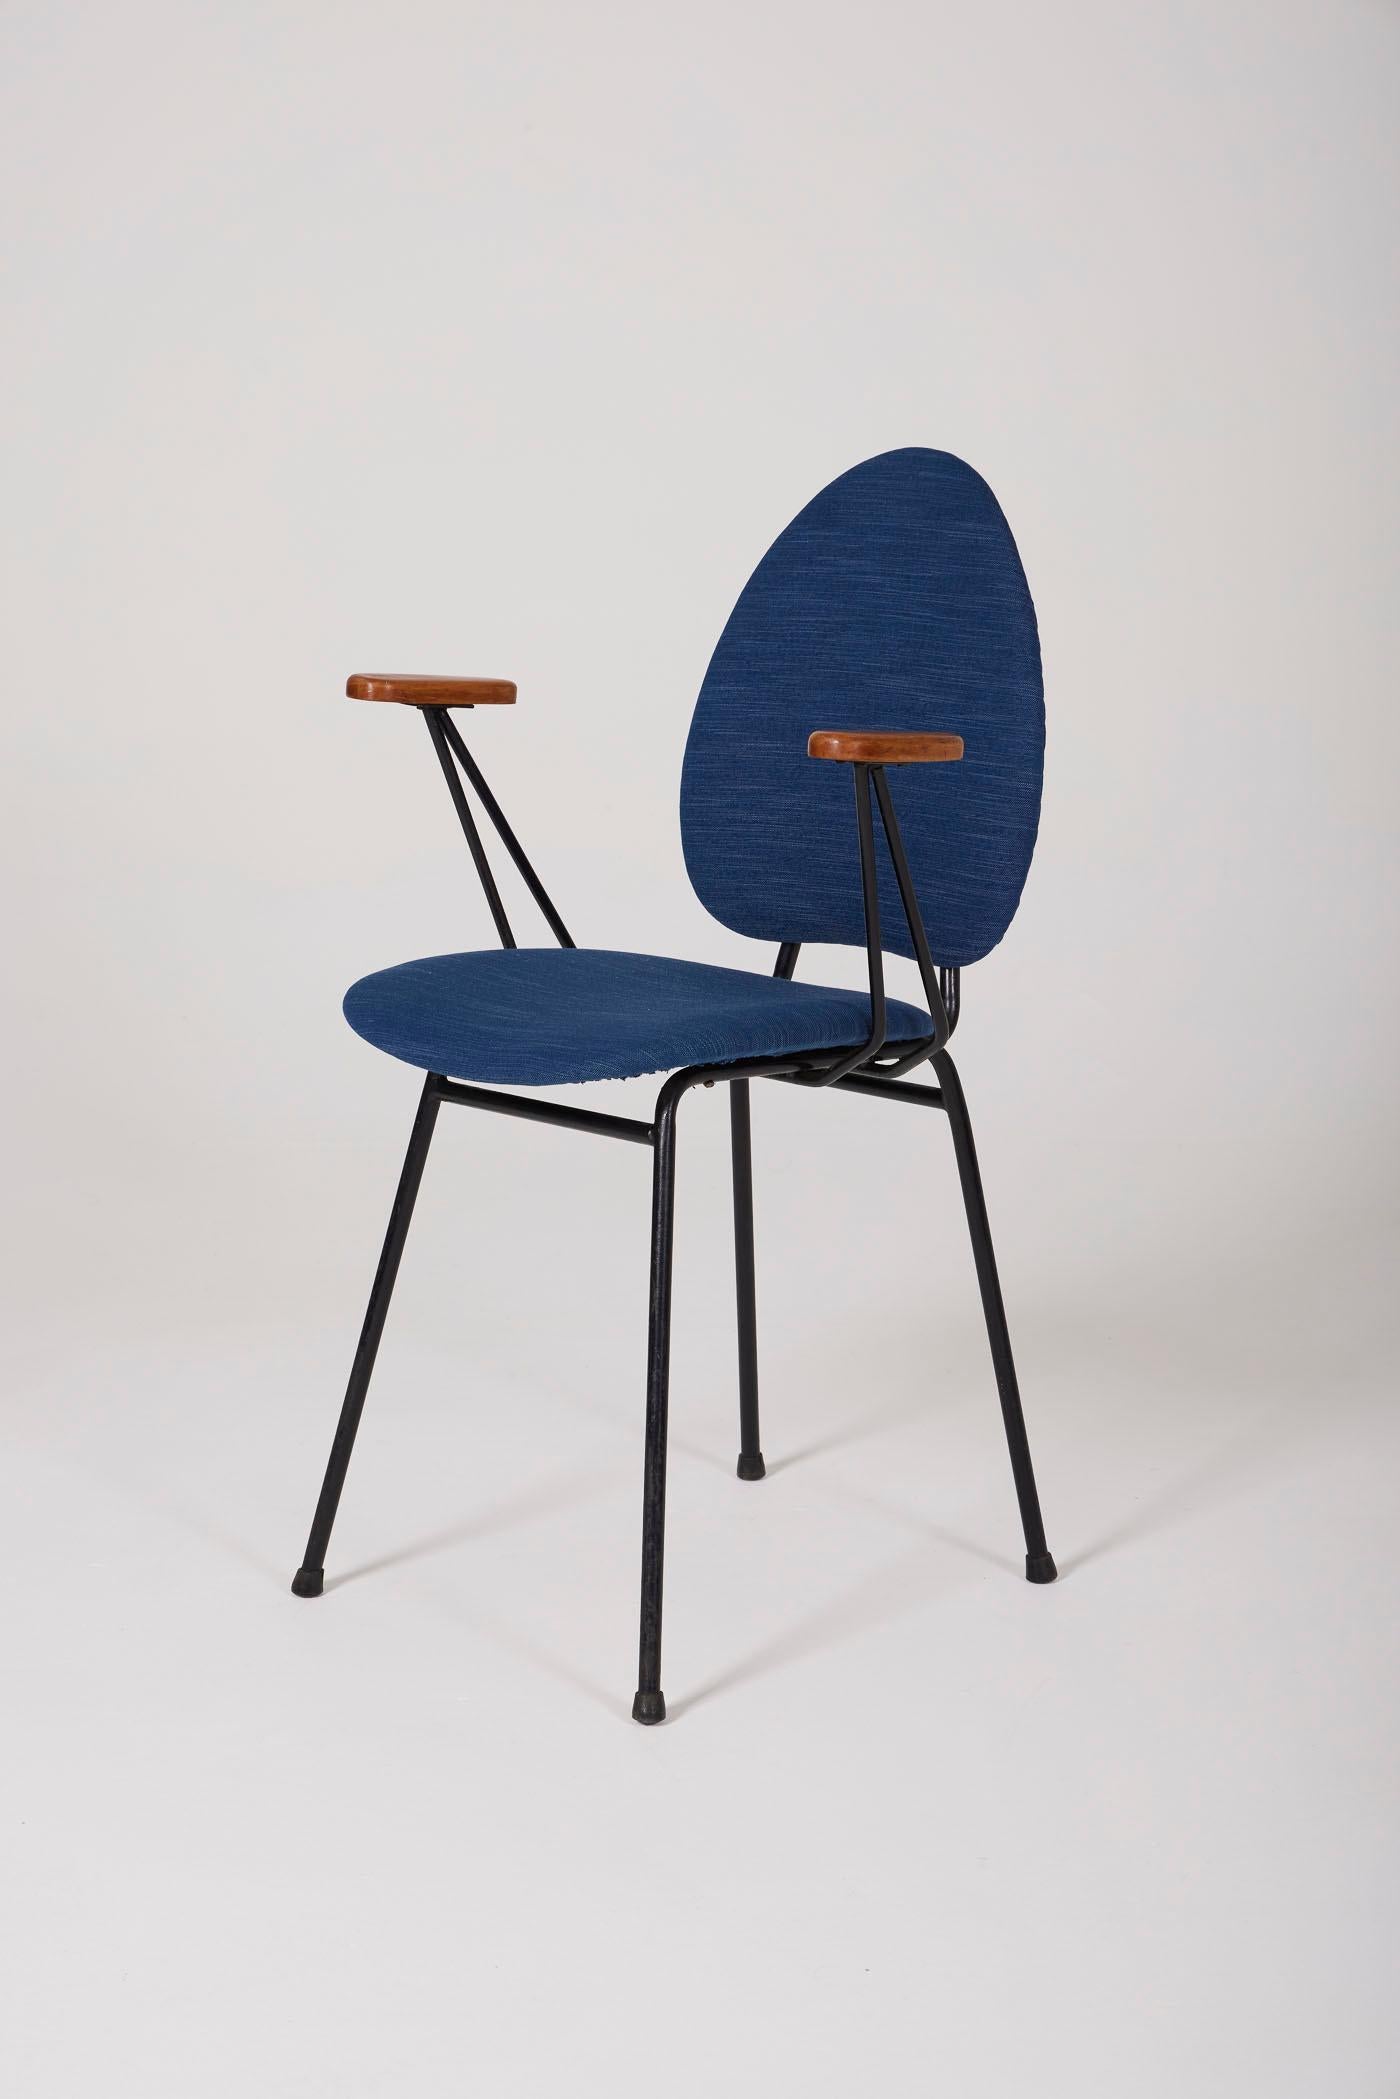 Paire de fauteuils attribués au designer français Jacques Hitier, datant des années 1950. Ils se composent de deux accoudoirs en bois et d'une base en métal laqué noir. Ils ont été retapissés dans un tissu bleu. En parfait état.
DV411